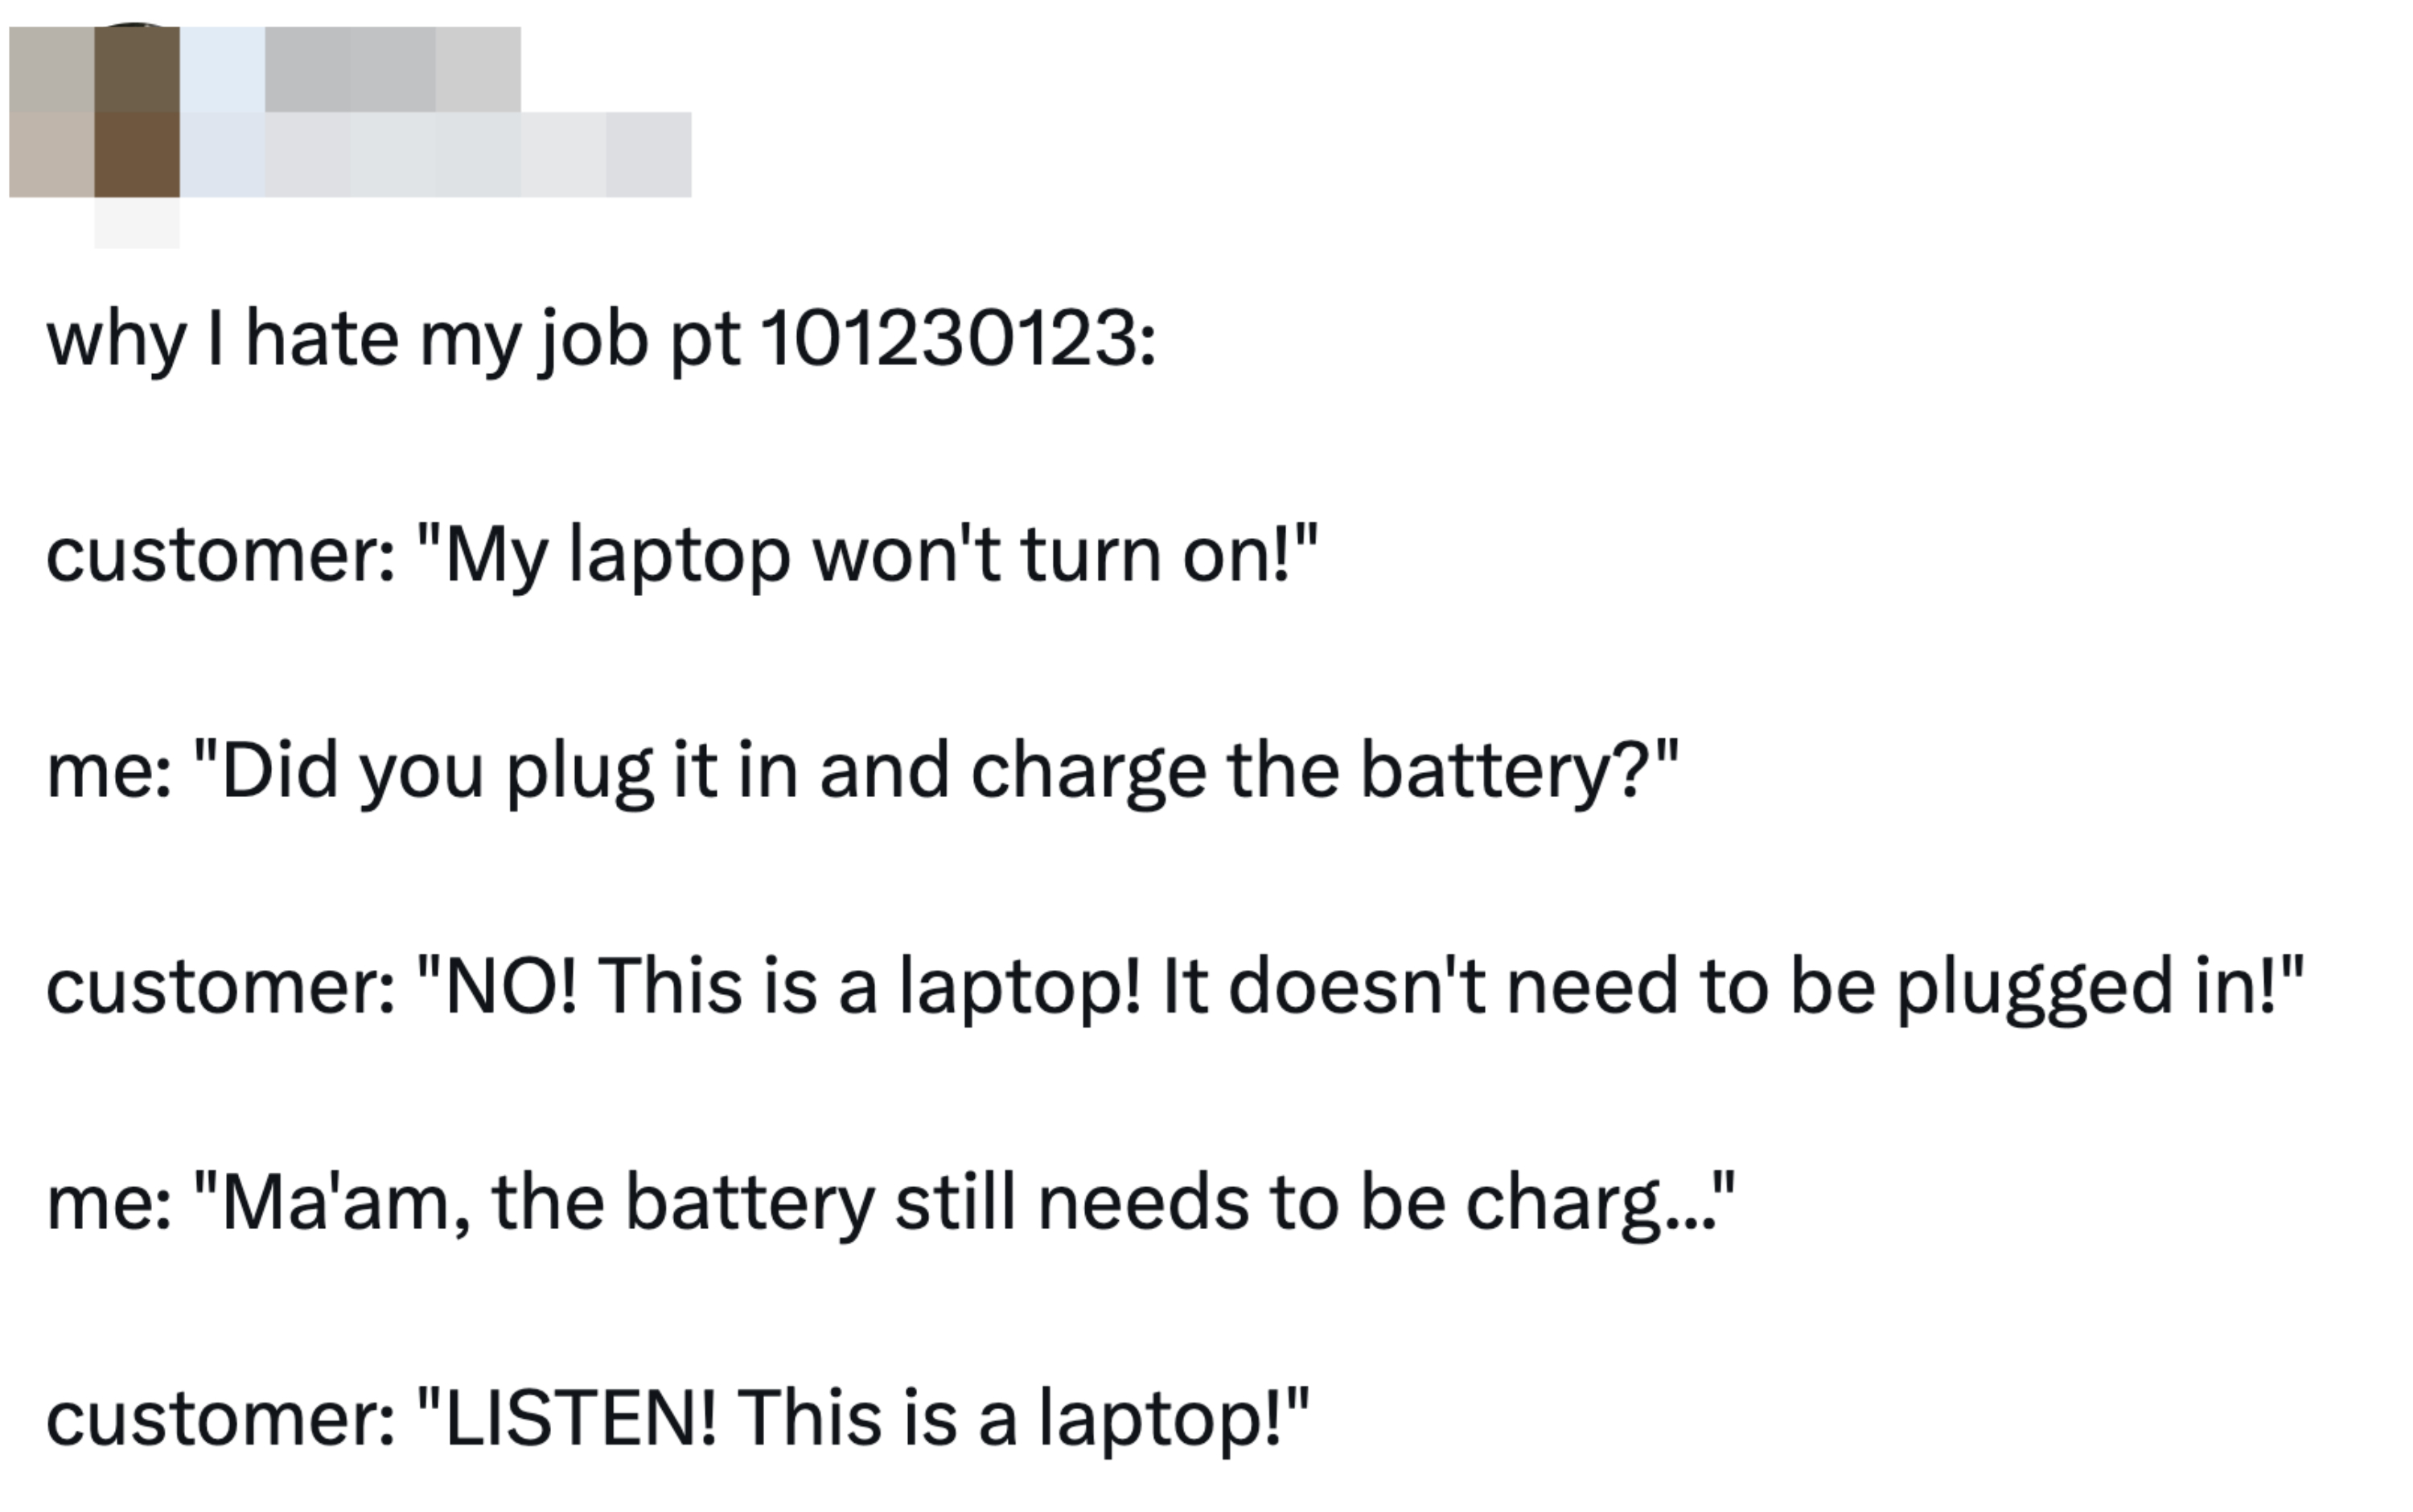 &quot;LISTEN! This is a laptop!&quot;